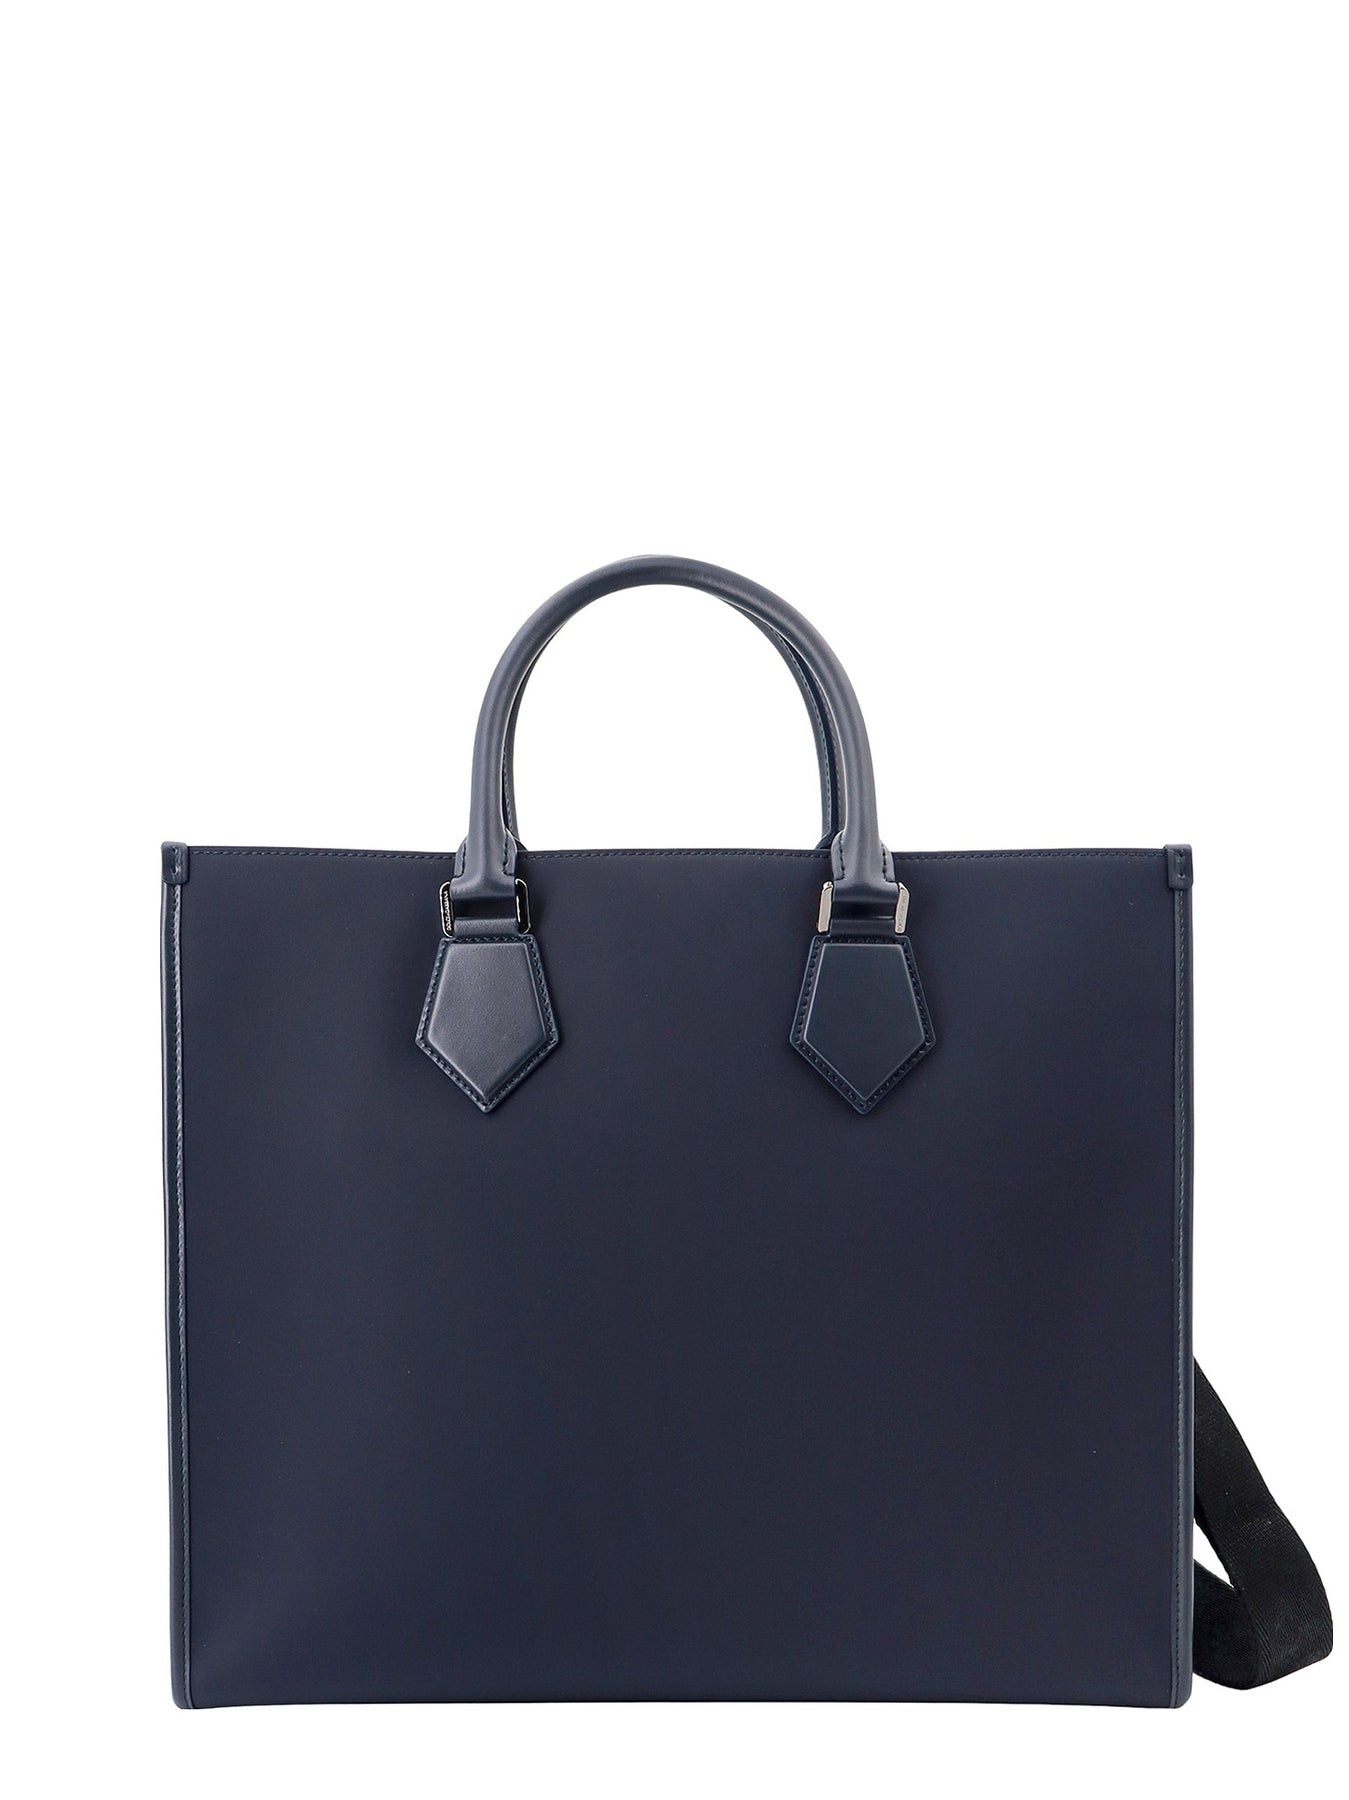 Nylon and leather handbag with frontal logo print - 2